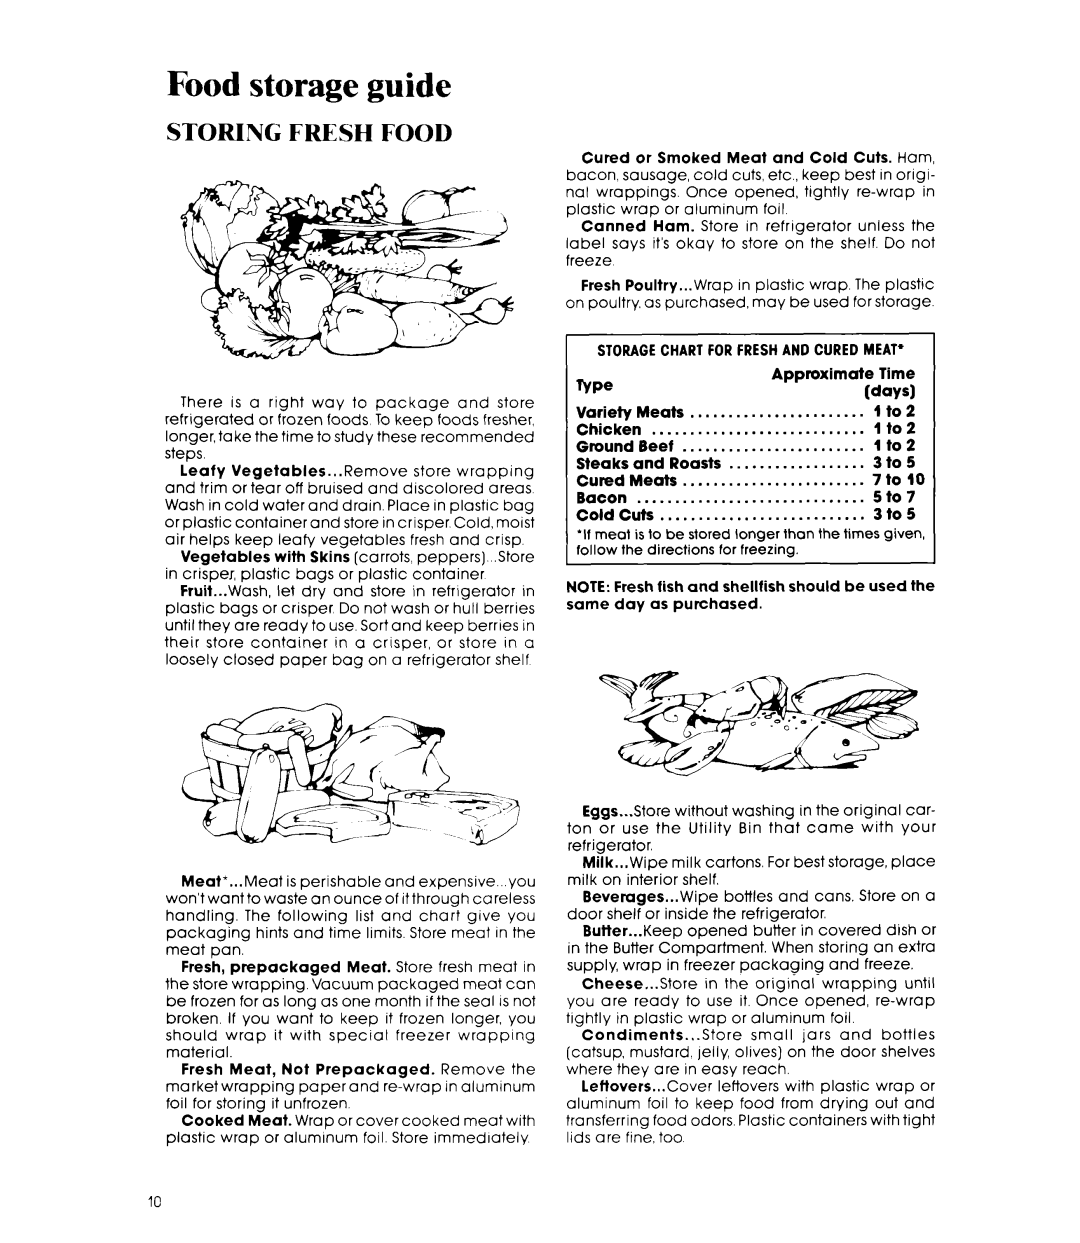 Whirlpool ETl8MK manual Food storage guide, Storing Fresh Food 